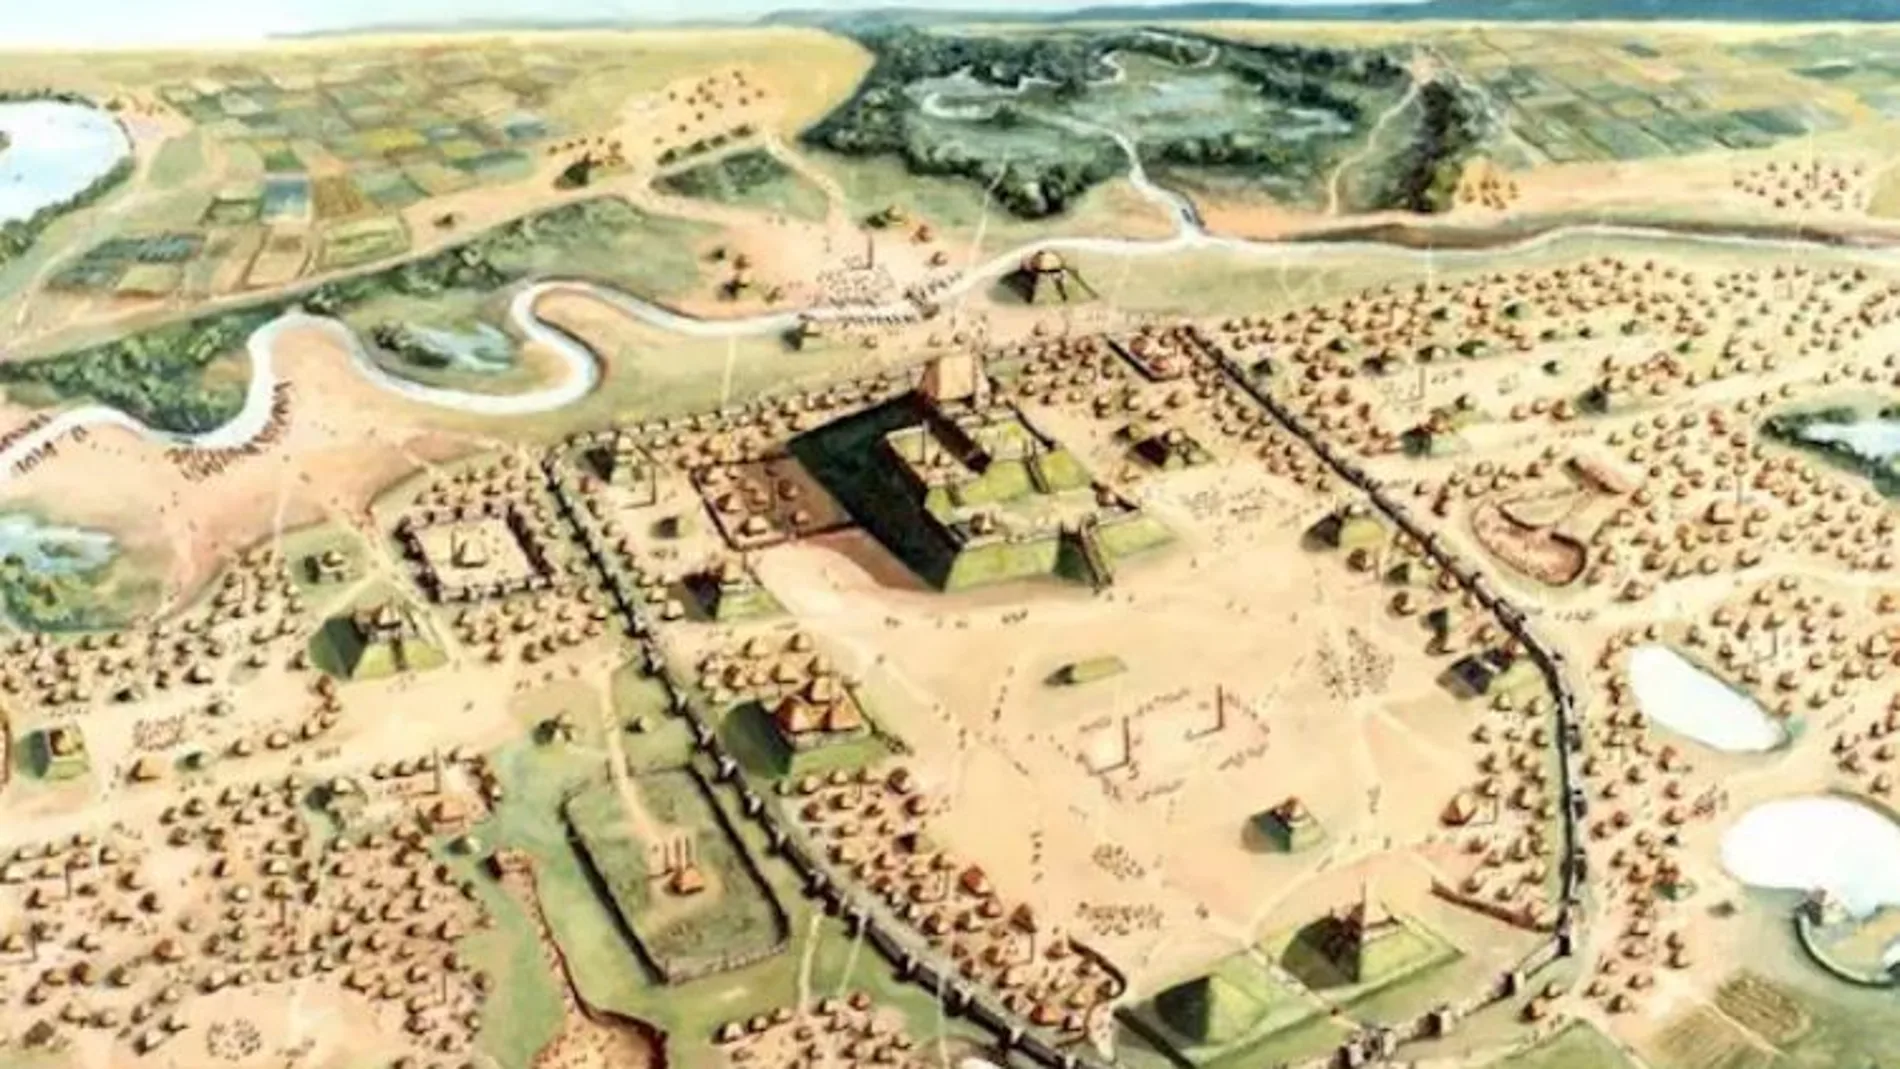 Recreación de la ciudad precolombina de Cahokia, junto al Mississipi - CAHOKIA MOUNDS HISTORIC STATE SITE/W.R. ISEMINGER